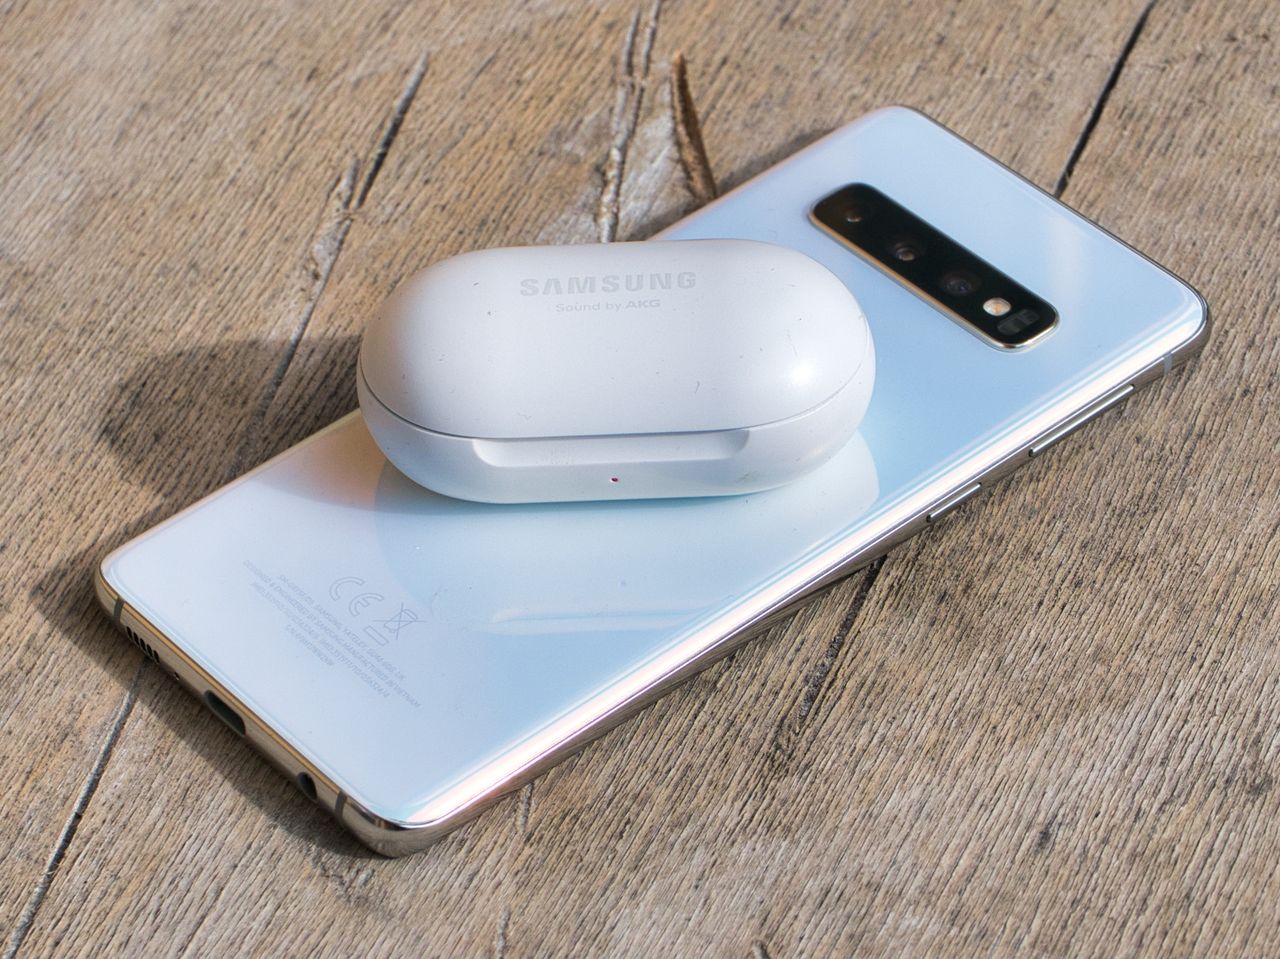 Funkcja PowerShare pozwala ładować Galaxy Buds smartfonem Galaxy S10